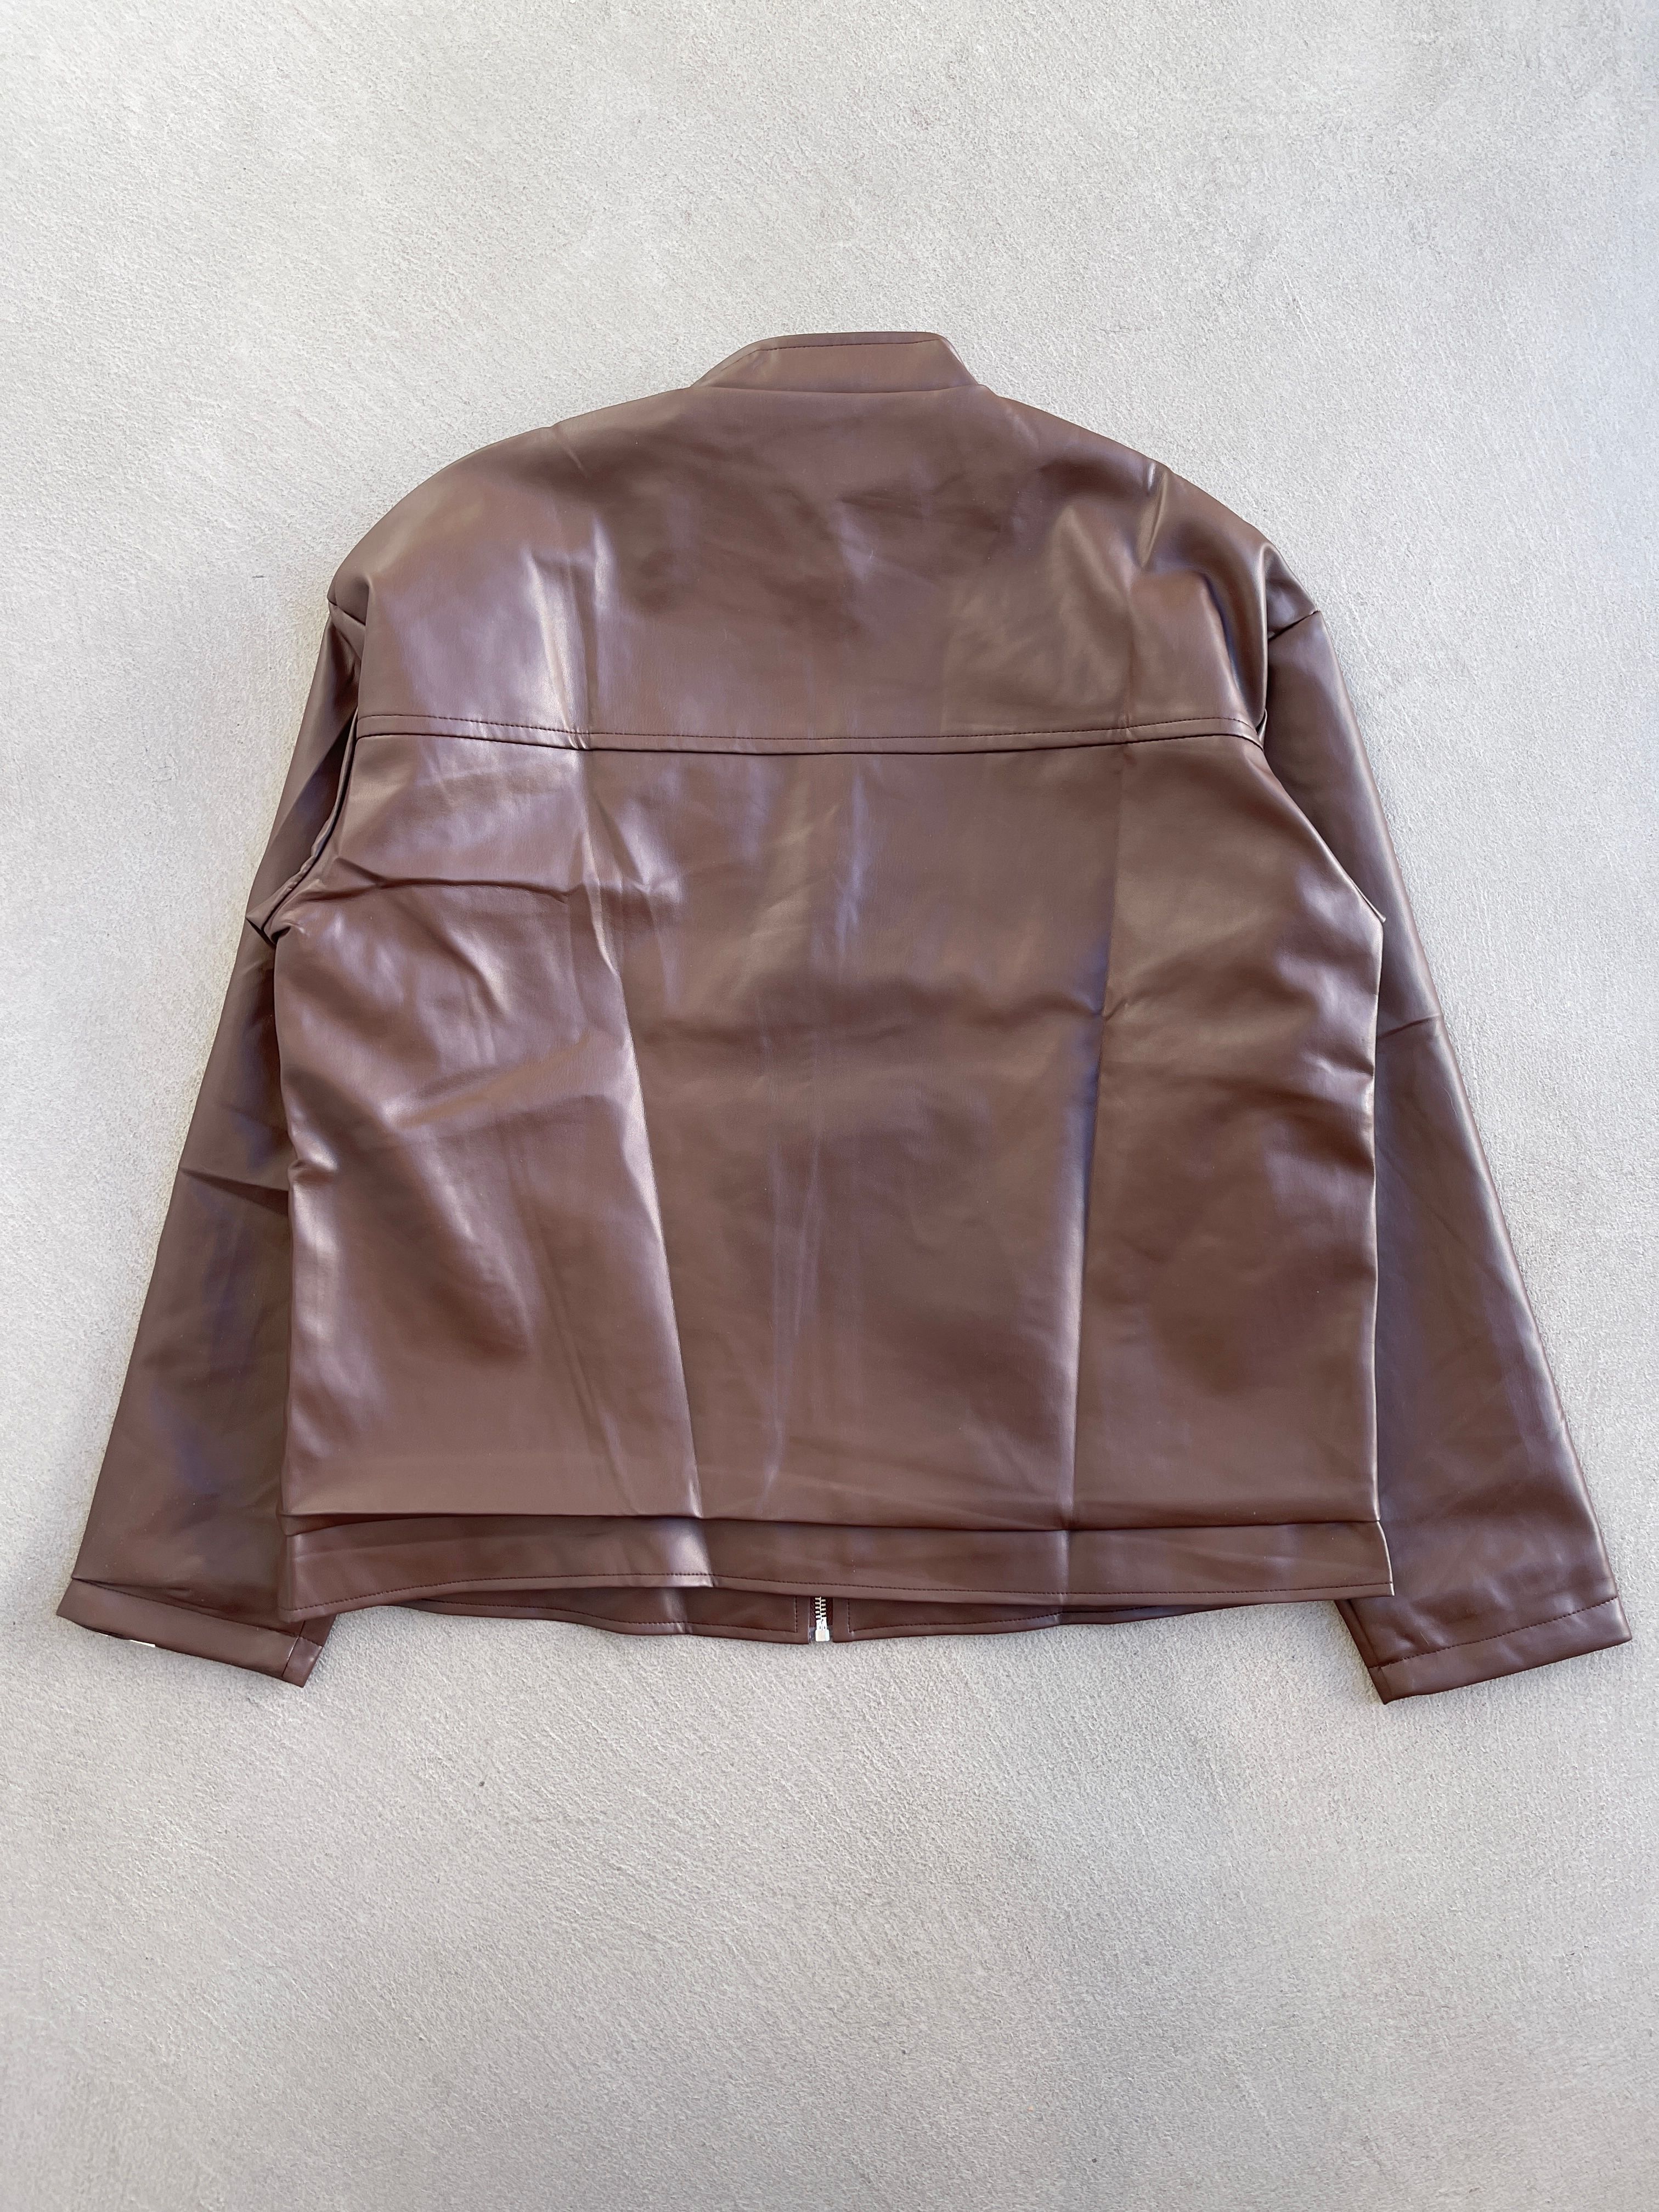 Vintage - STEAL! 2000s Japan Stripe Leather Jacket (M) - 4